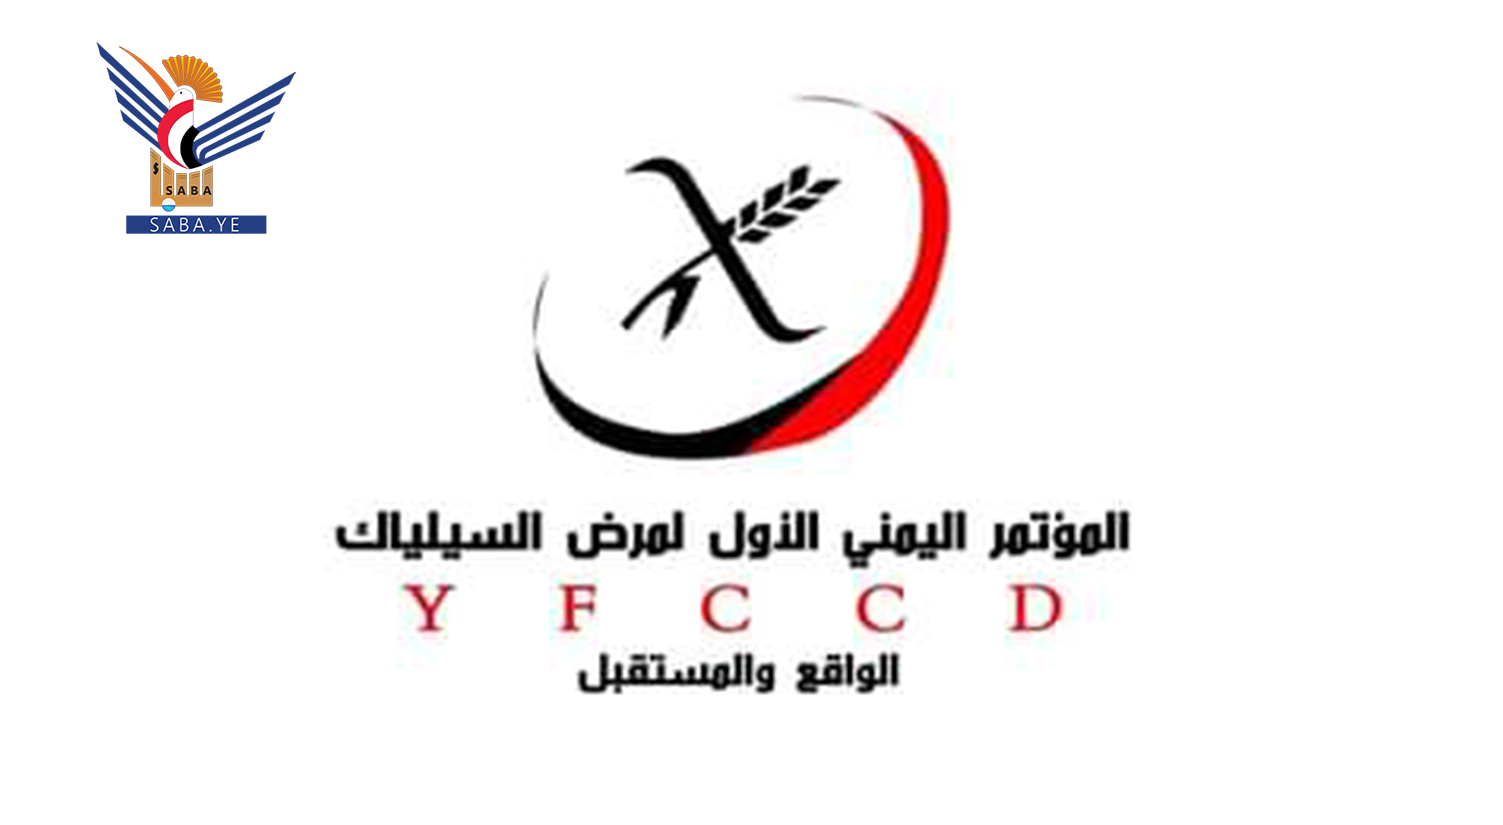  Préparatifs pour la tenue de la première conférence yéménite sur la maladie cœliaque à Sana'a